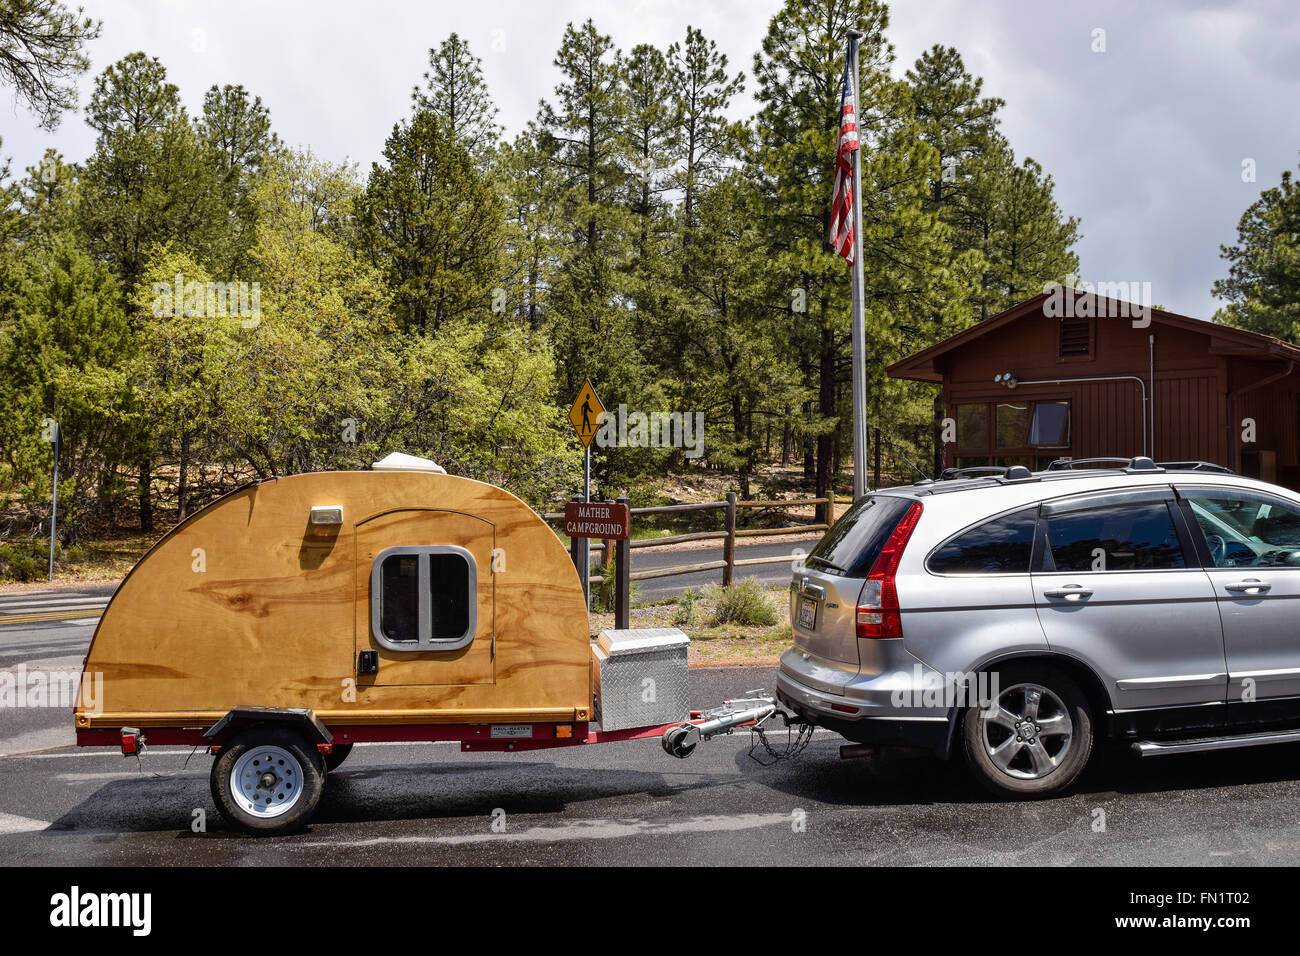 GRAND Canyon National Park, ESTADOS UNIDOS, 29 de mayo de 2015: Self-made teardrop de madera en un remolque de camping camping Grand Canyon. Foto de stock